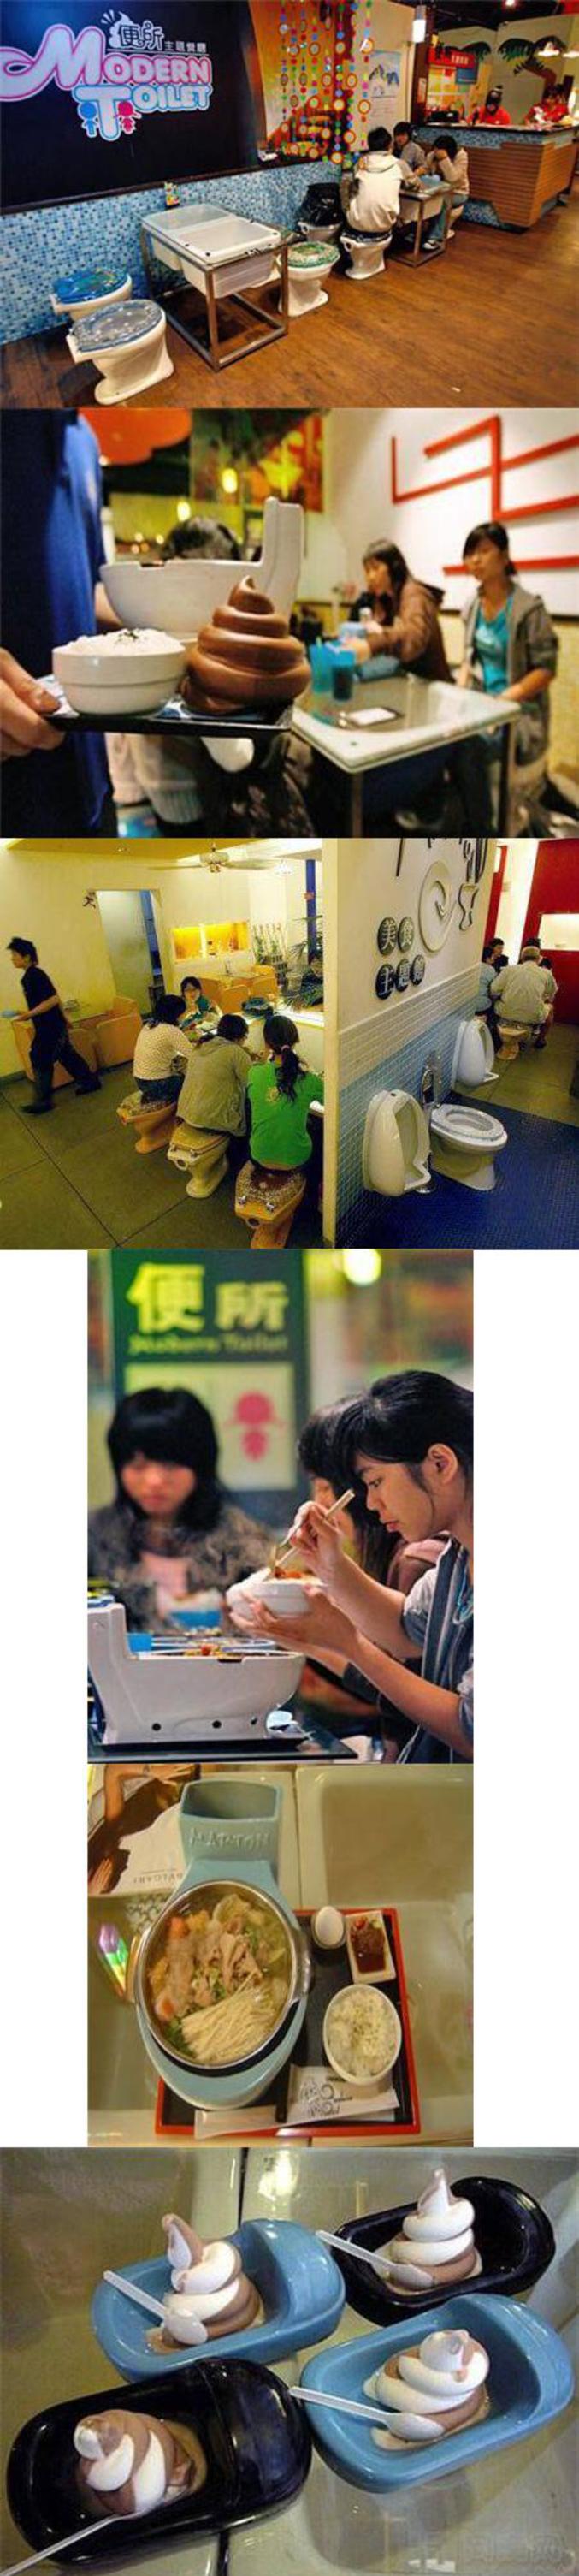 Un restaurant pour les accros des toilettes...